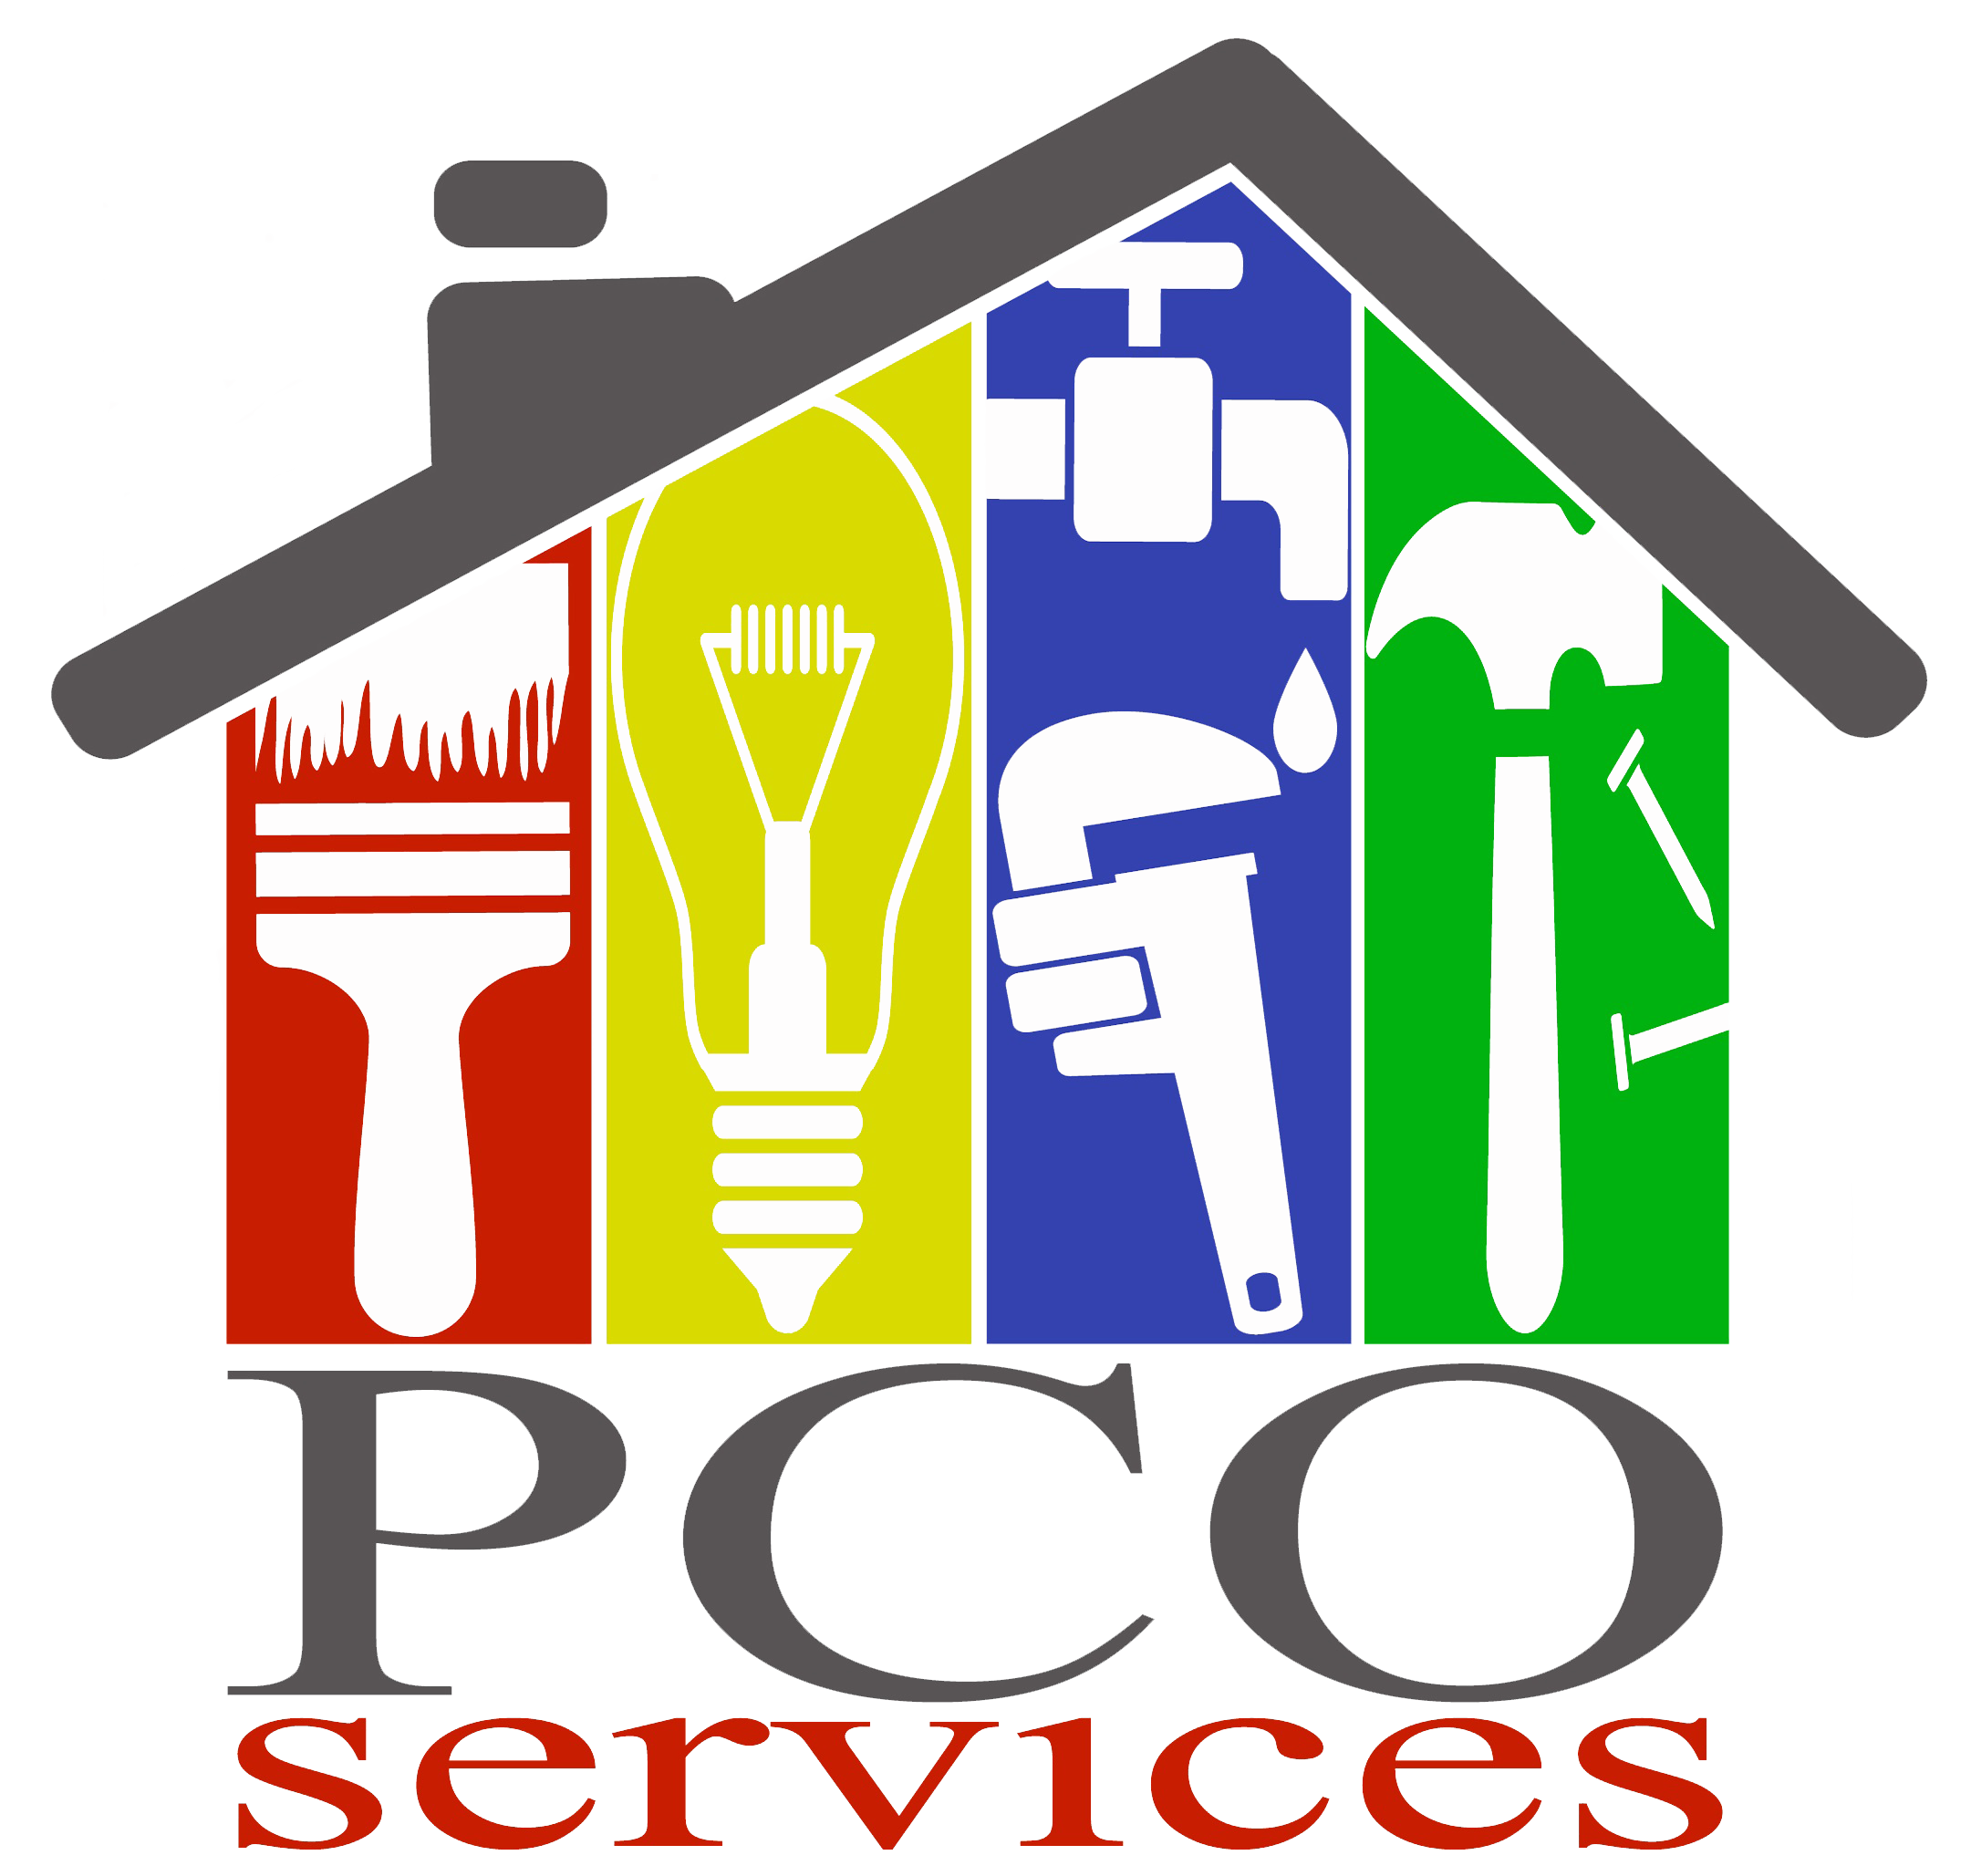 PCO Services